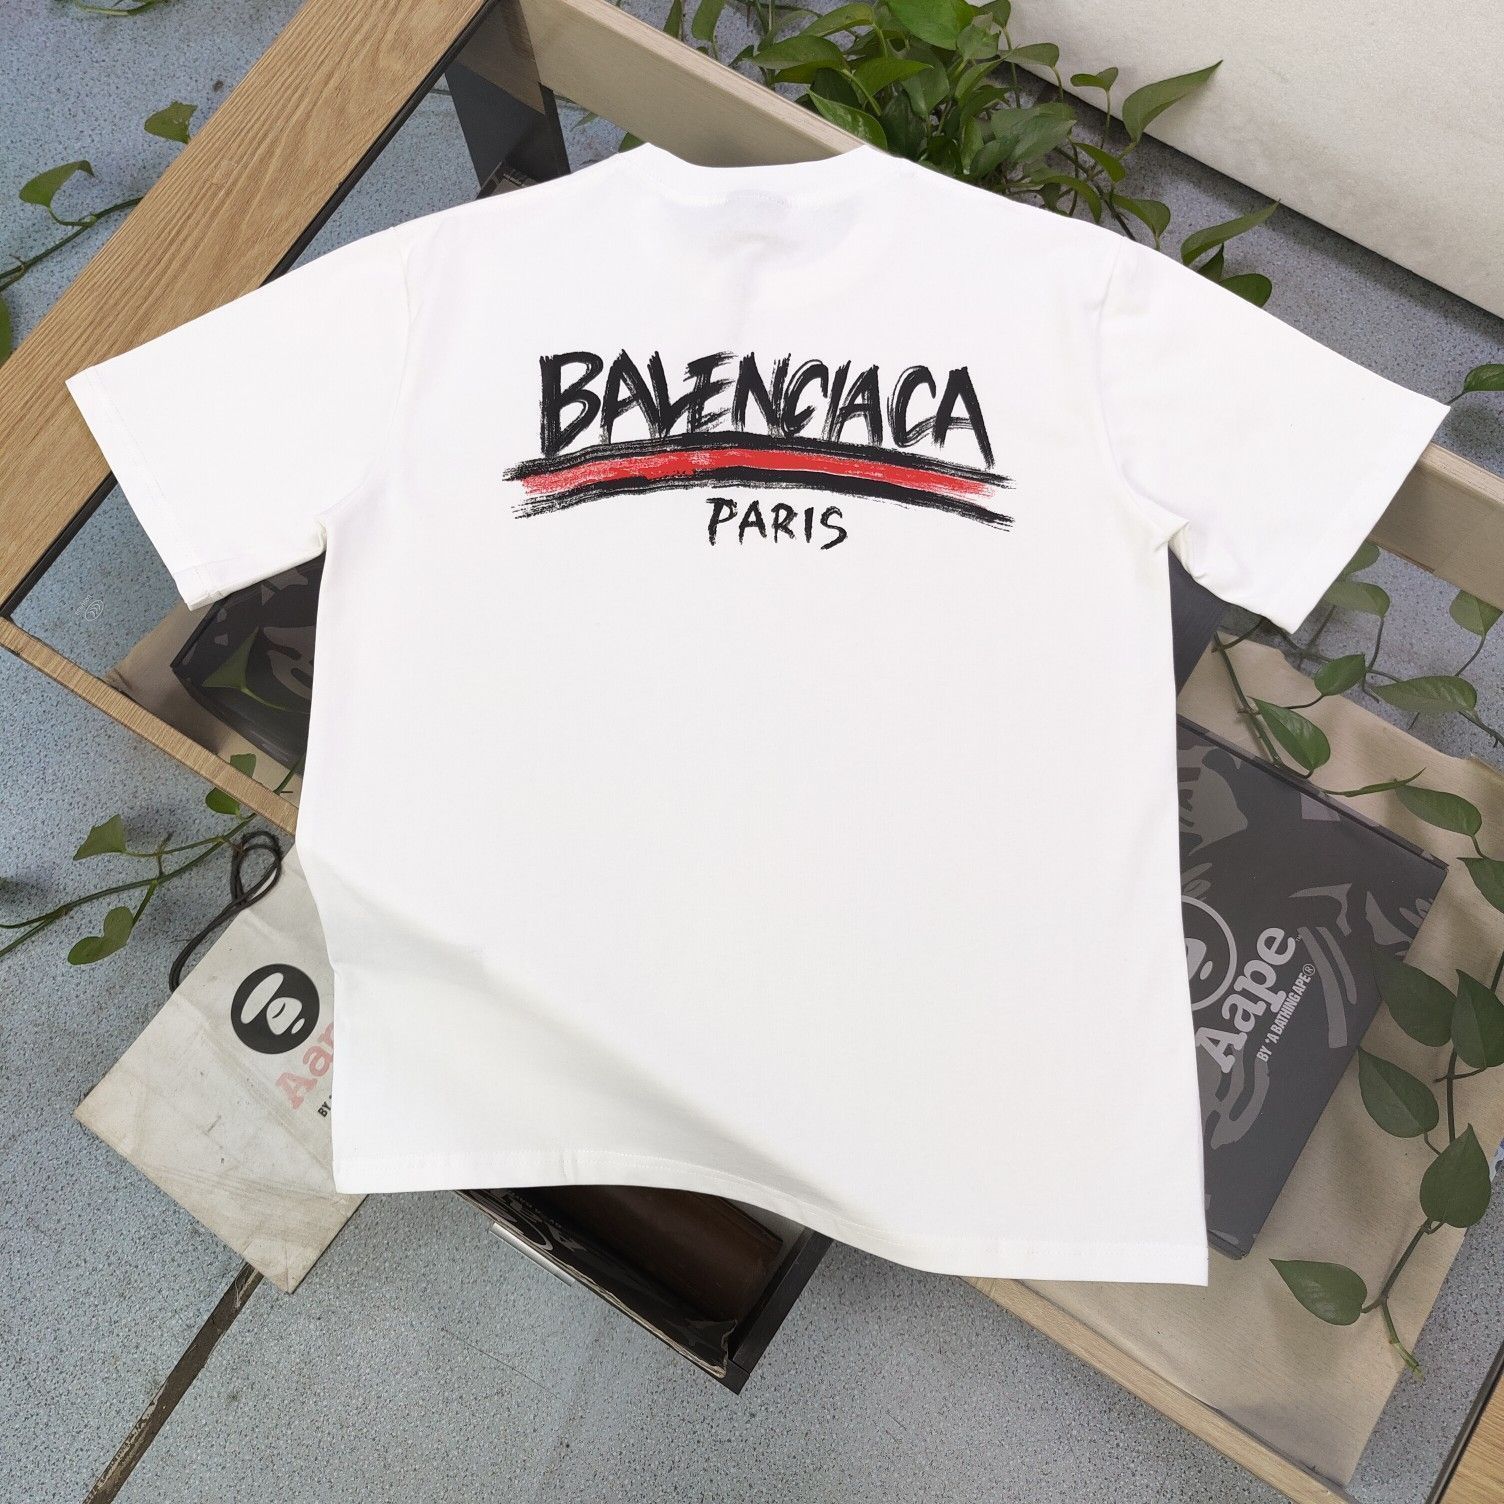 得価正規店Balenciaga /バレンシアガ カップルモデルアルファベットロゴ半袖Tee Tシャツ(半袖/袖なし)